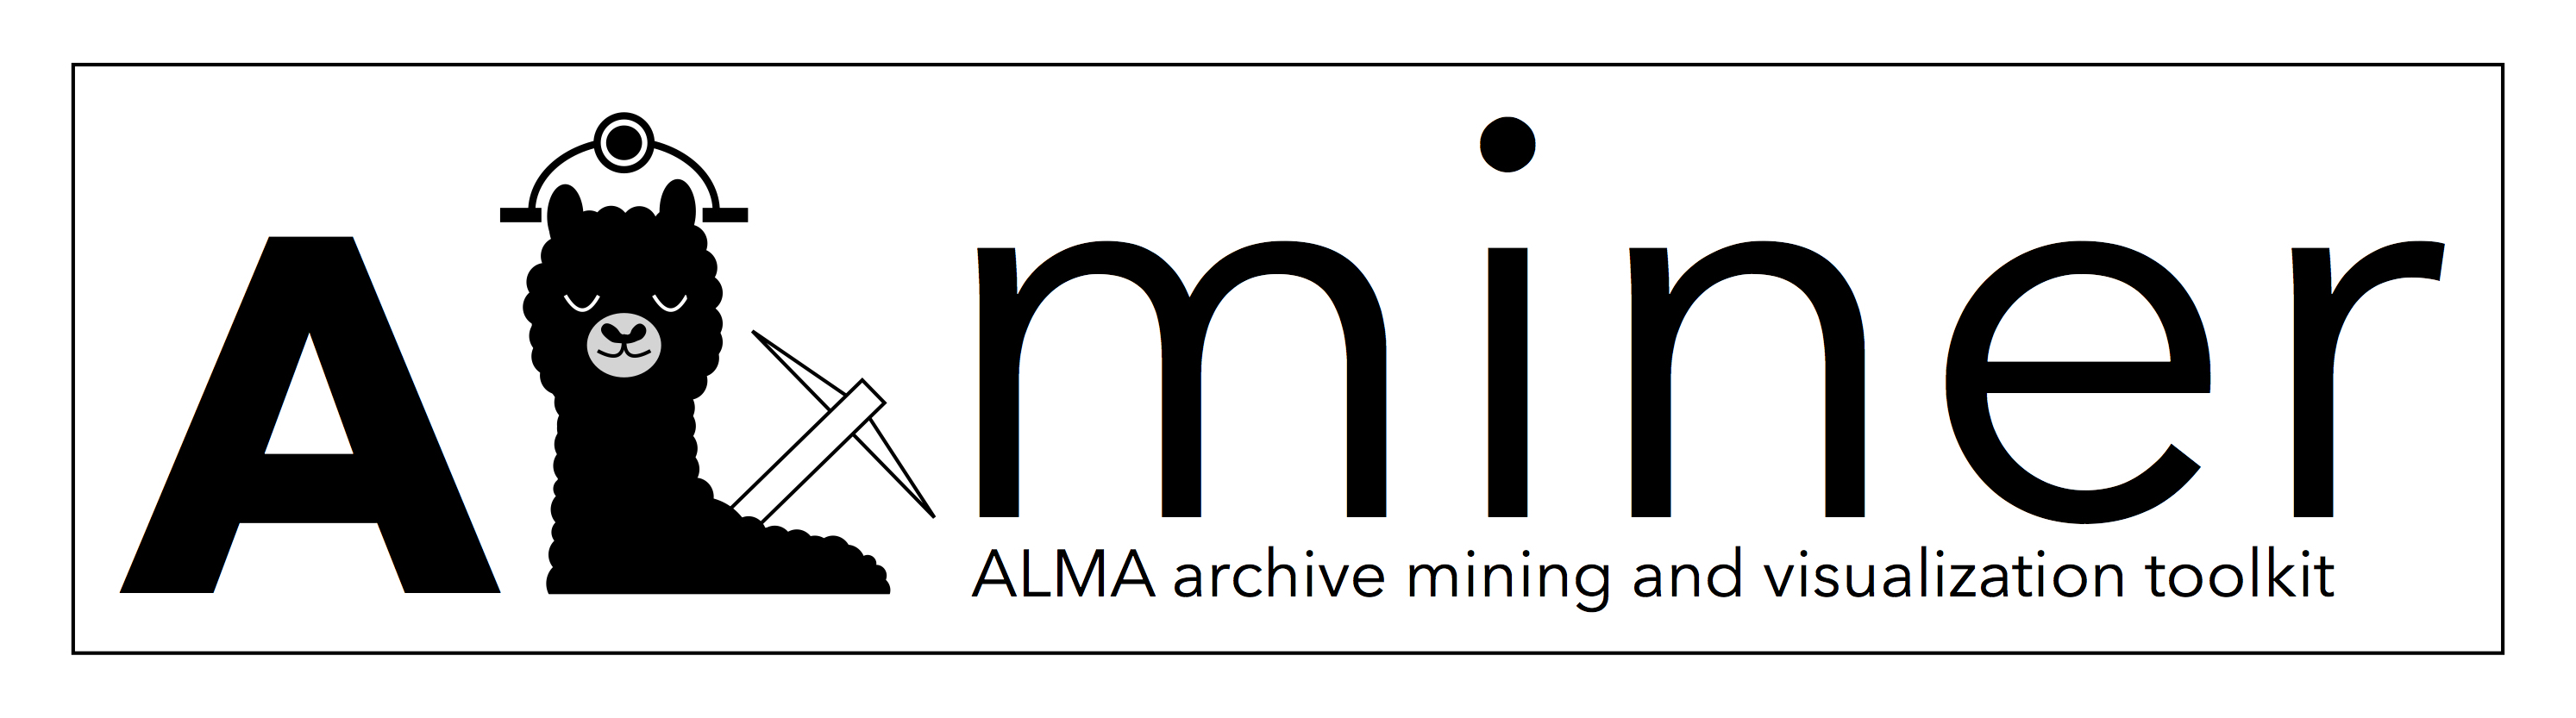 ALminer_logo_header.jpg